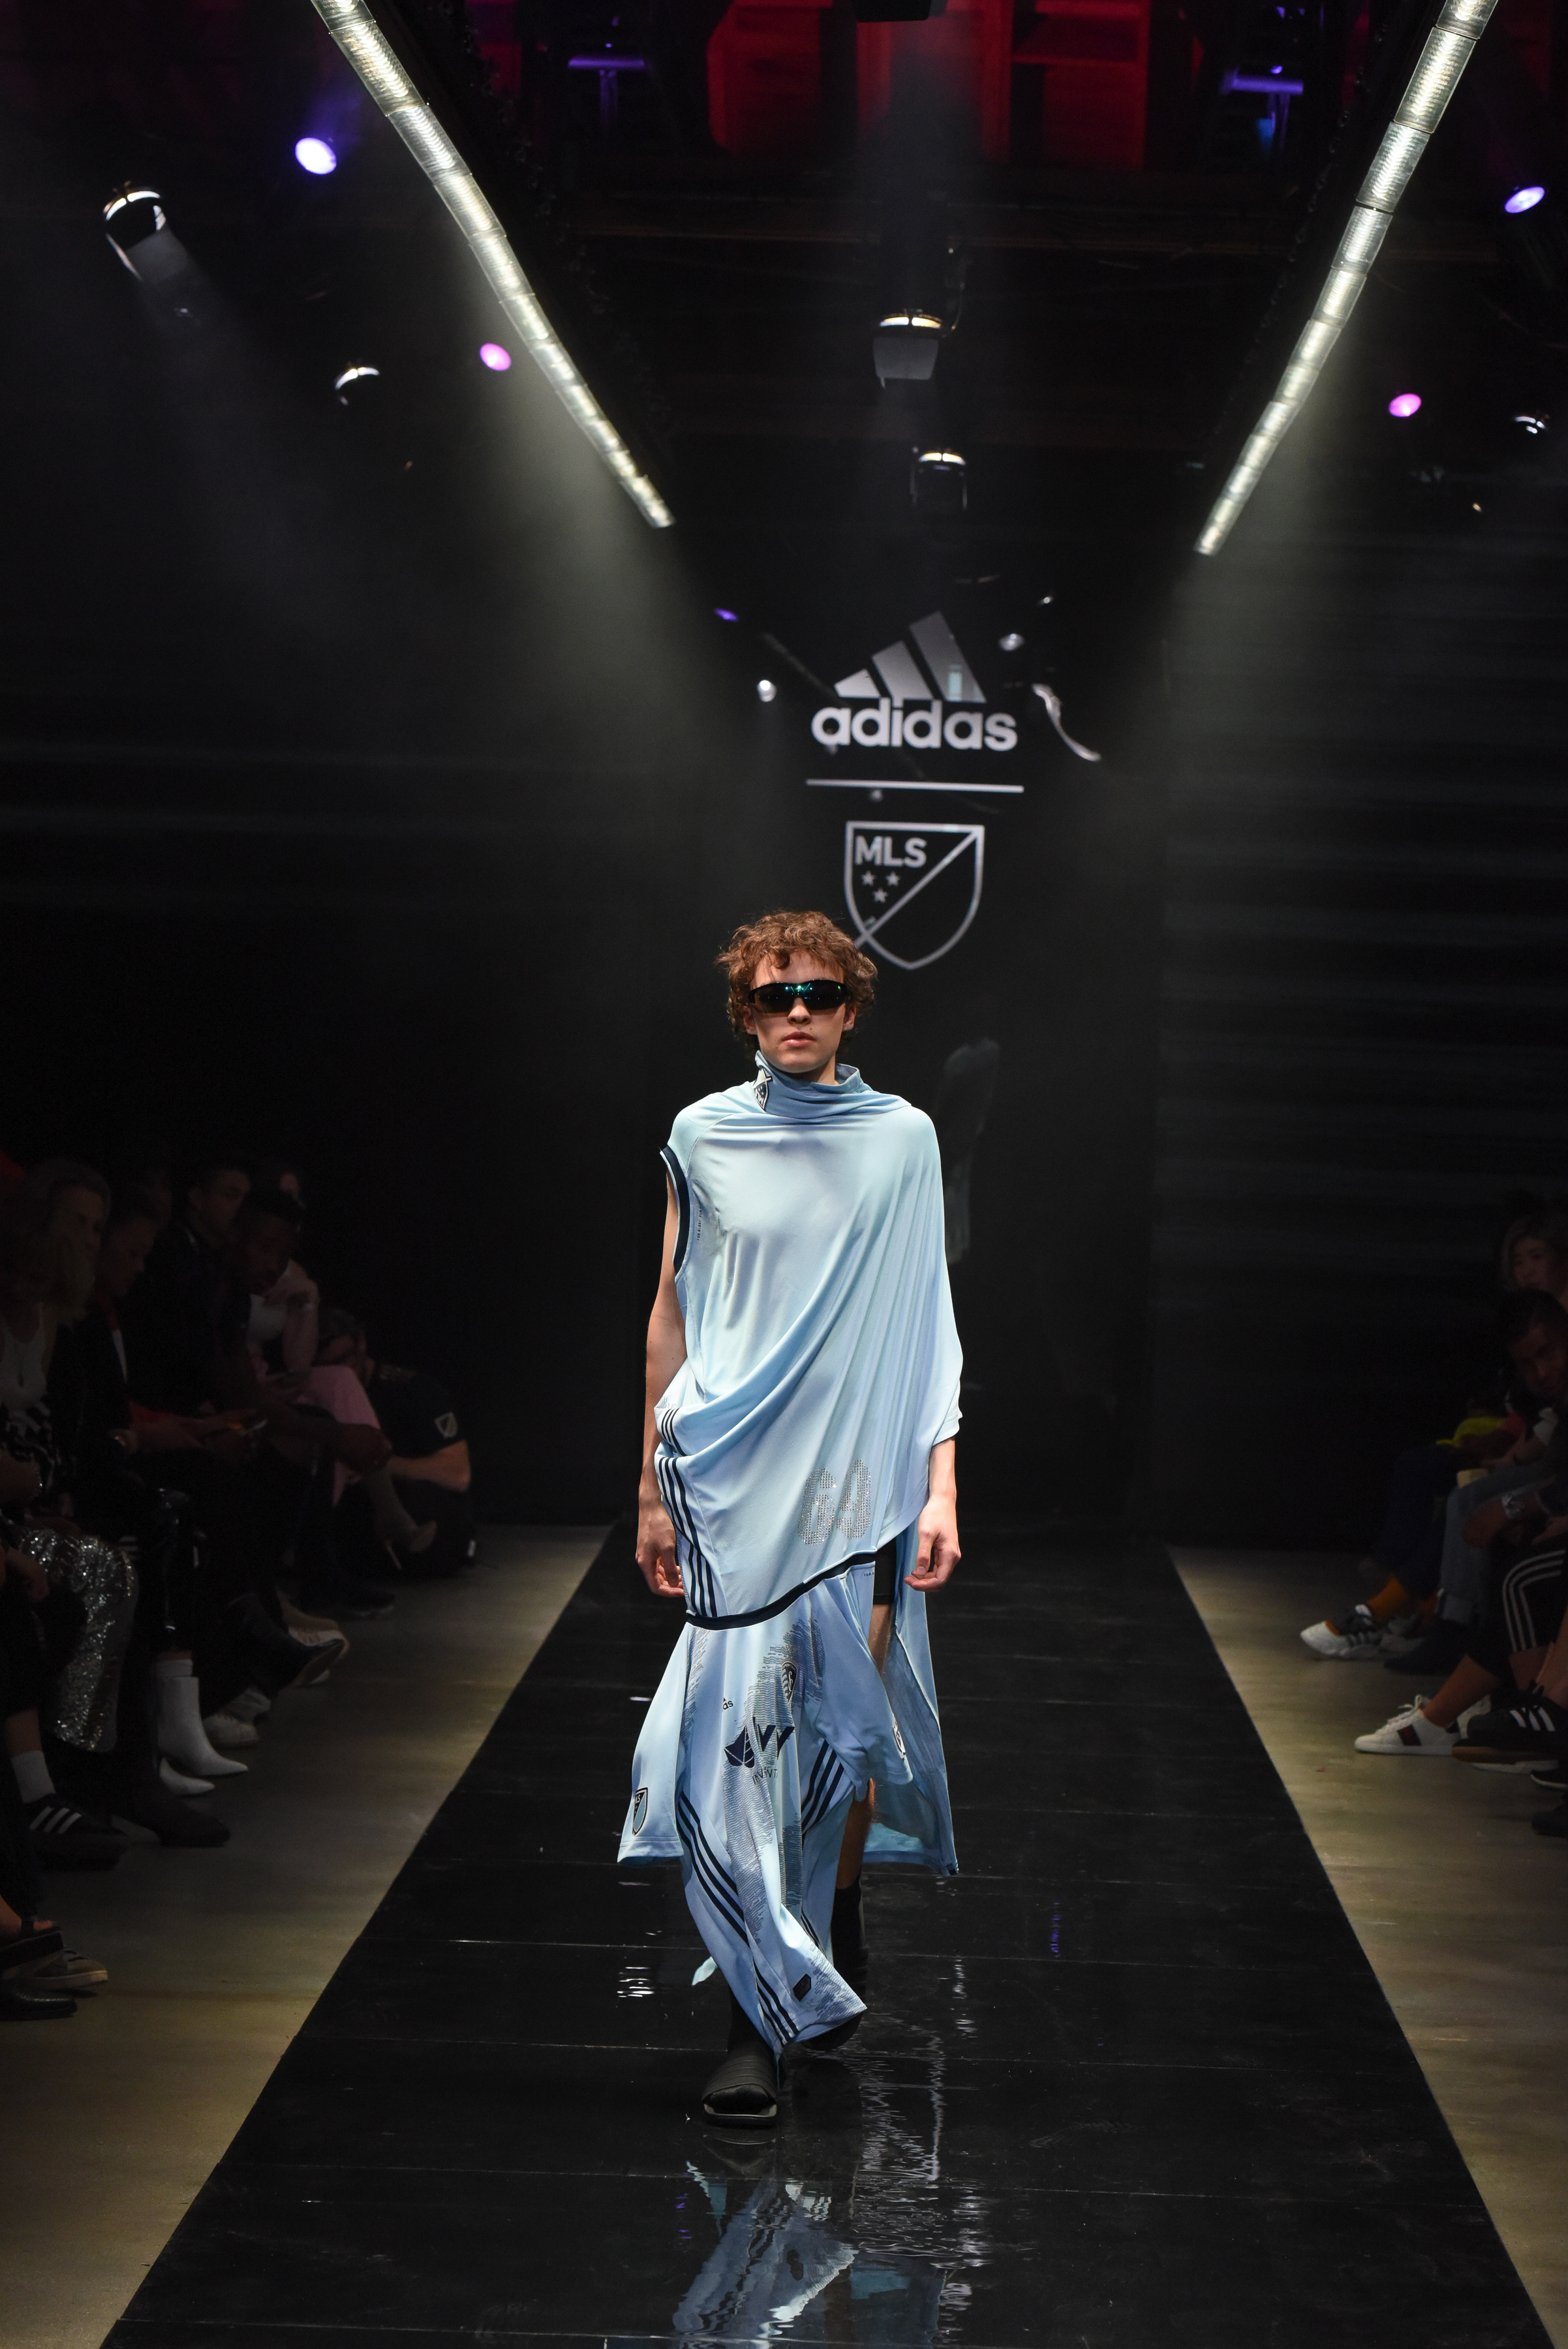 Adidas Taps Stylists to Put Spin on MLS Jerseys – WWD